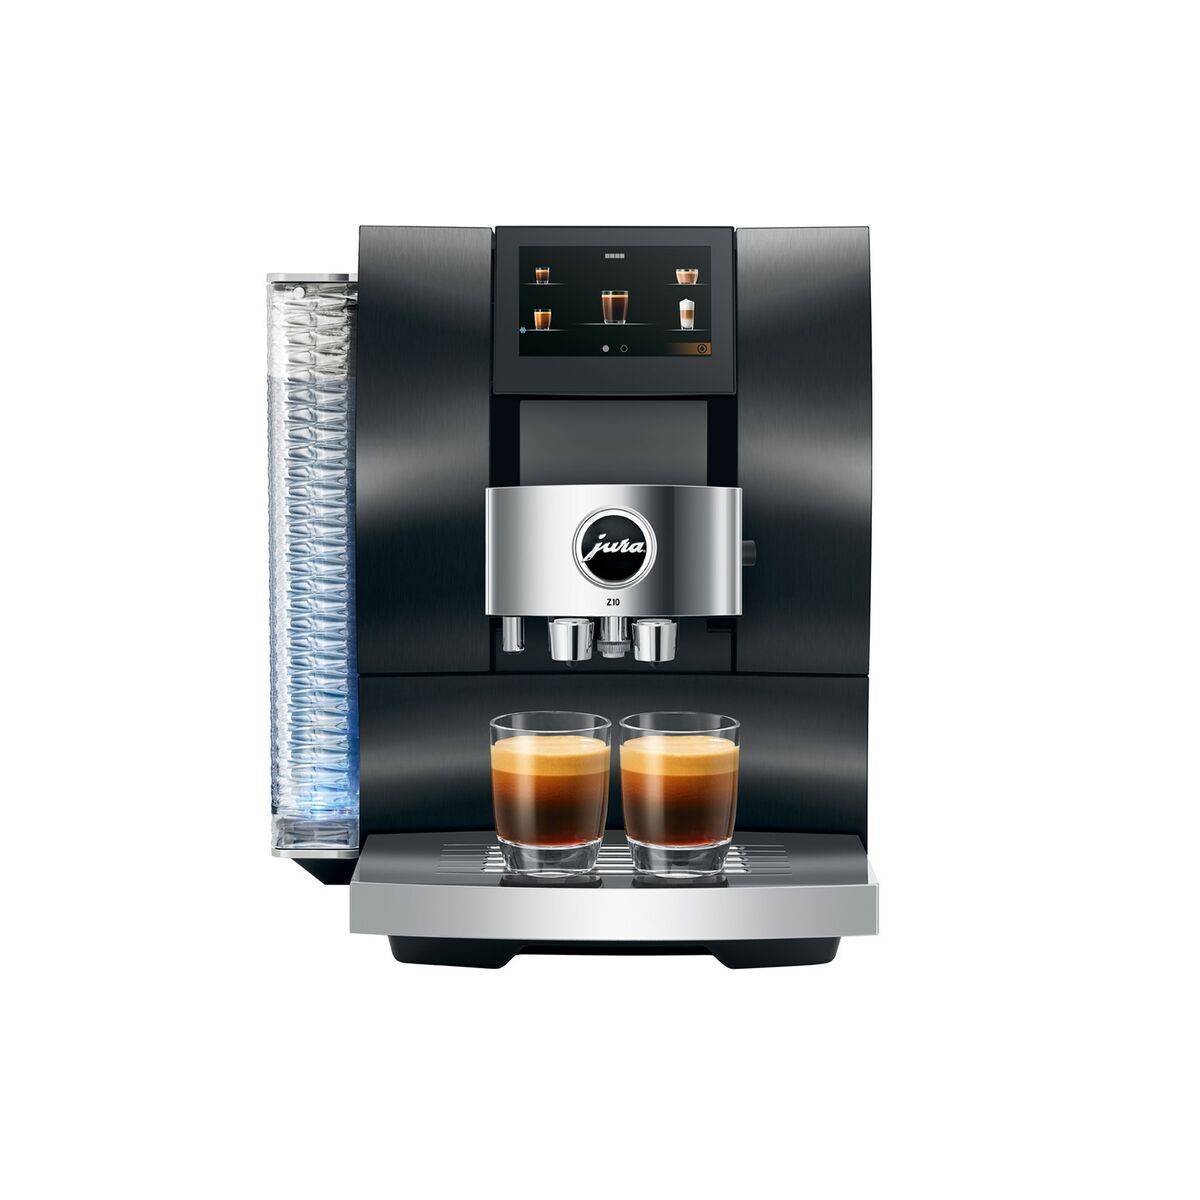 Superautomatic Coffee Maker Jura Black (Espresso machine) (Refurbished A)